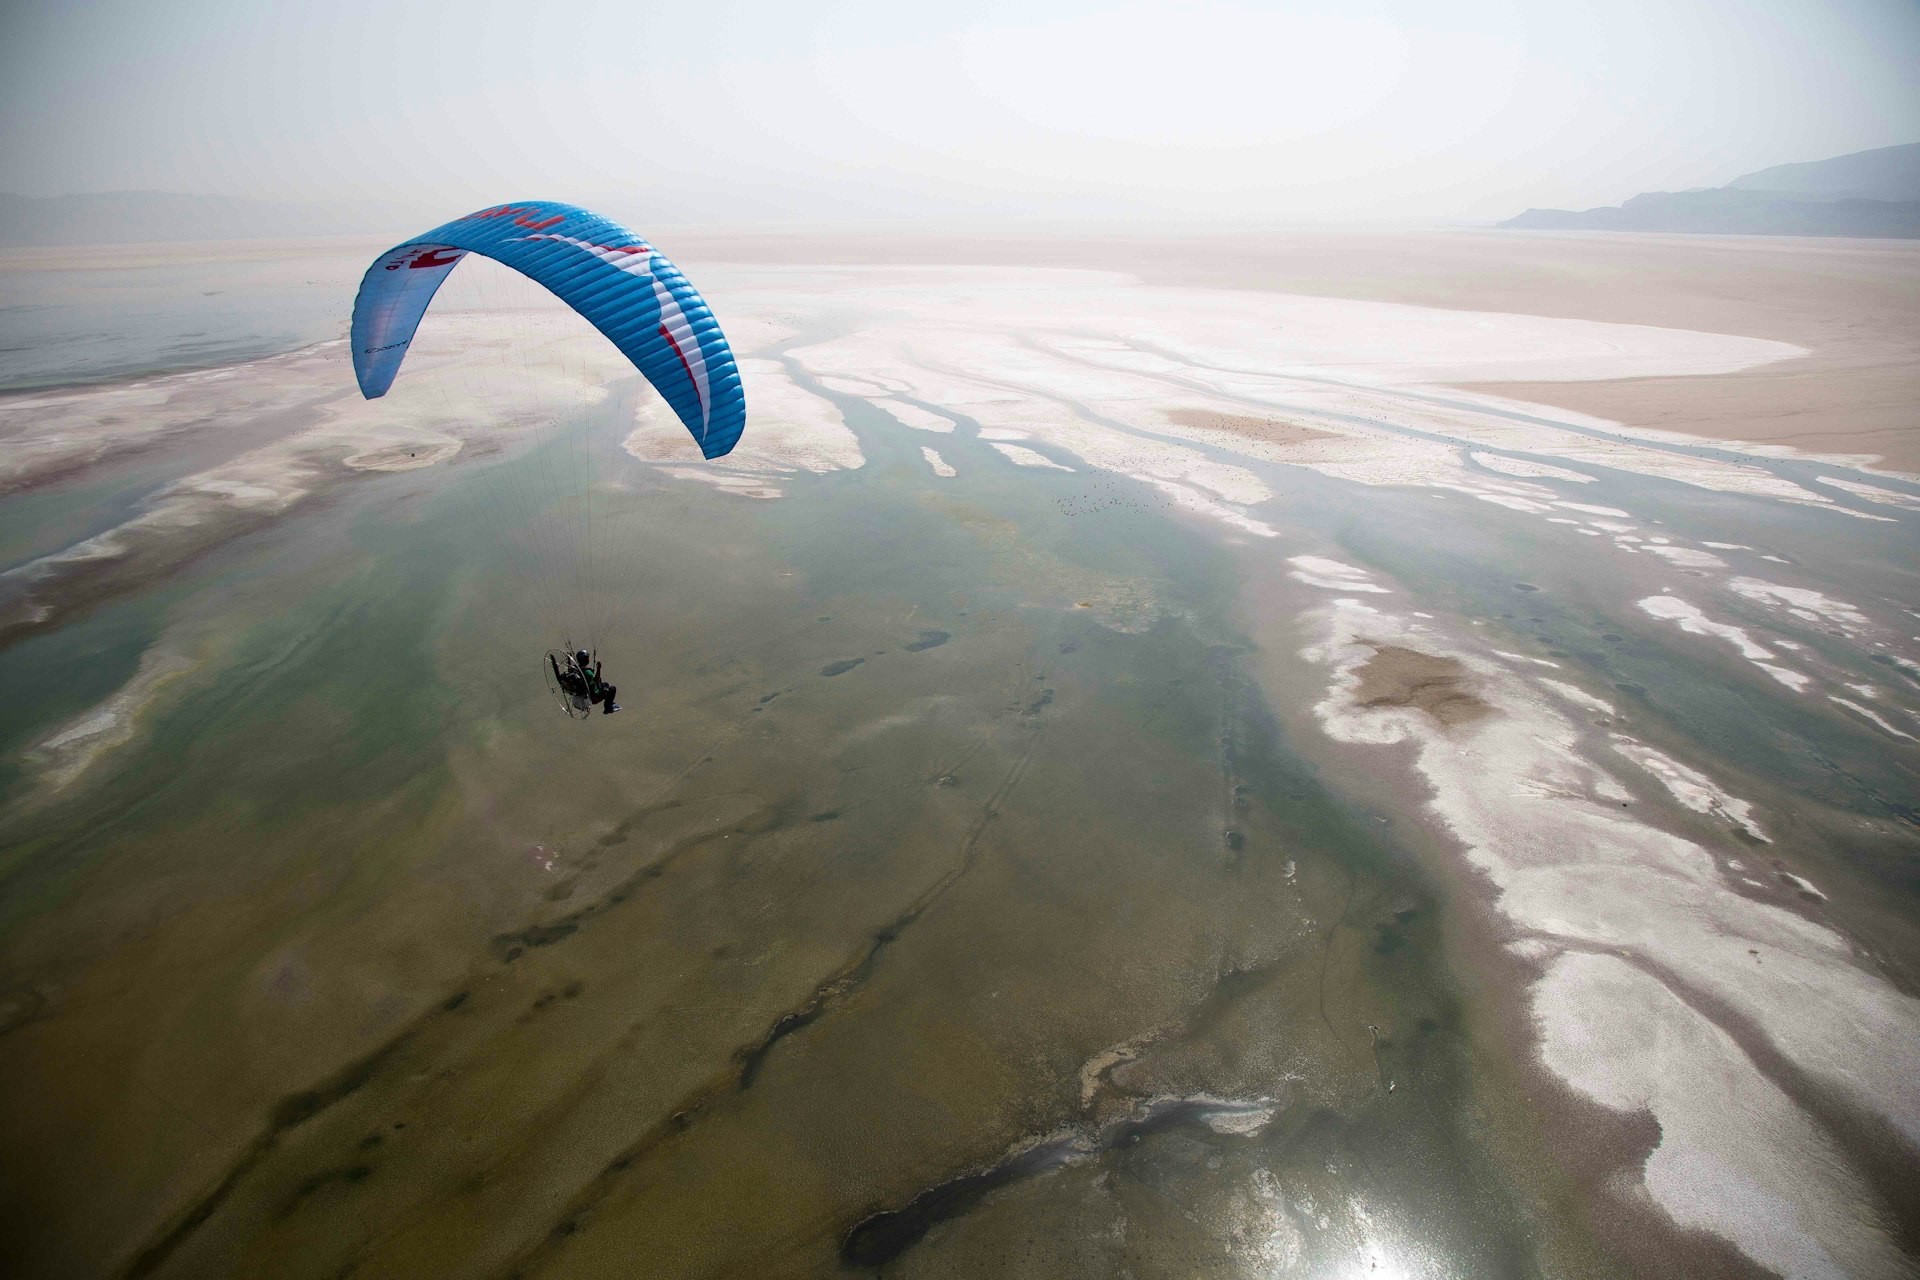 Gliding across borders: Taking flight in Iran